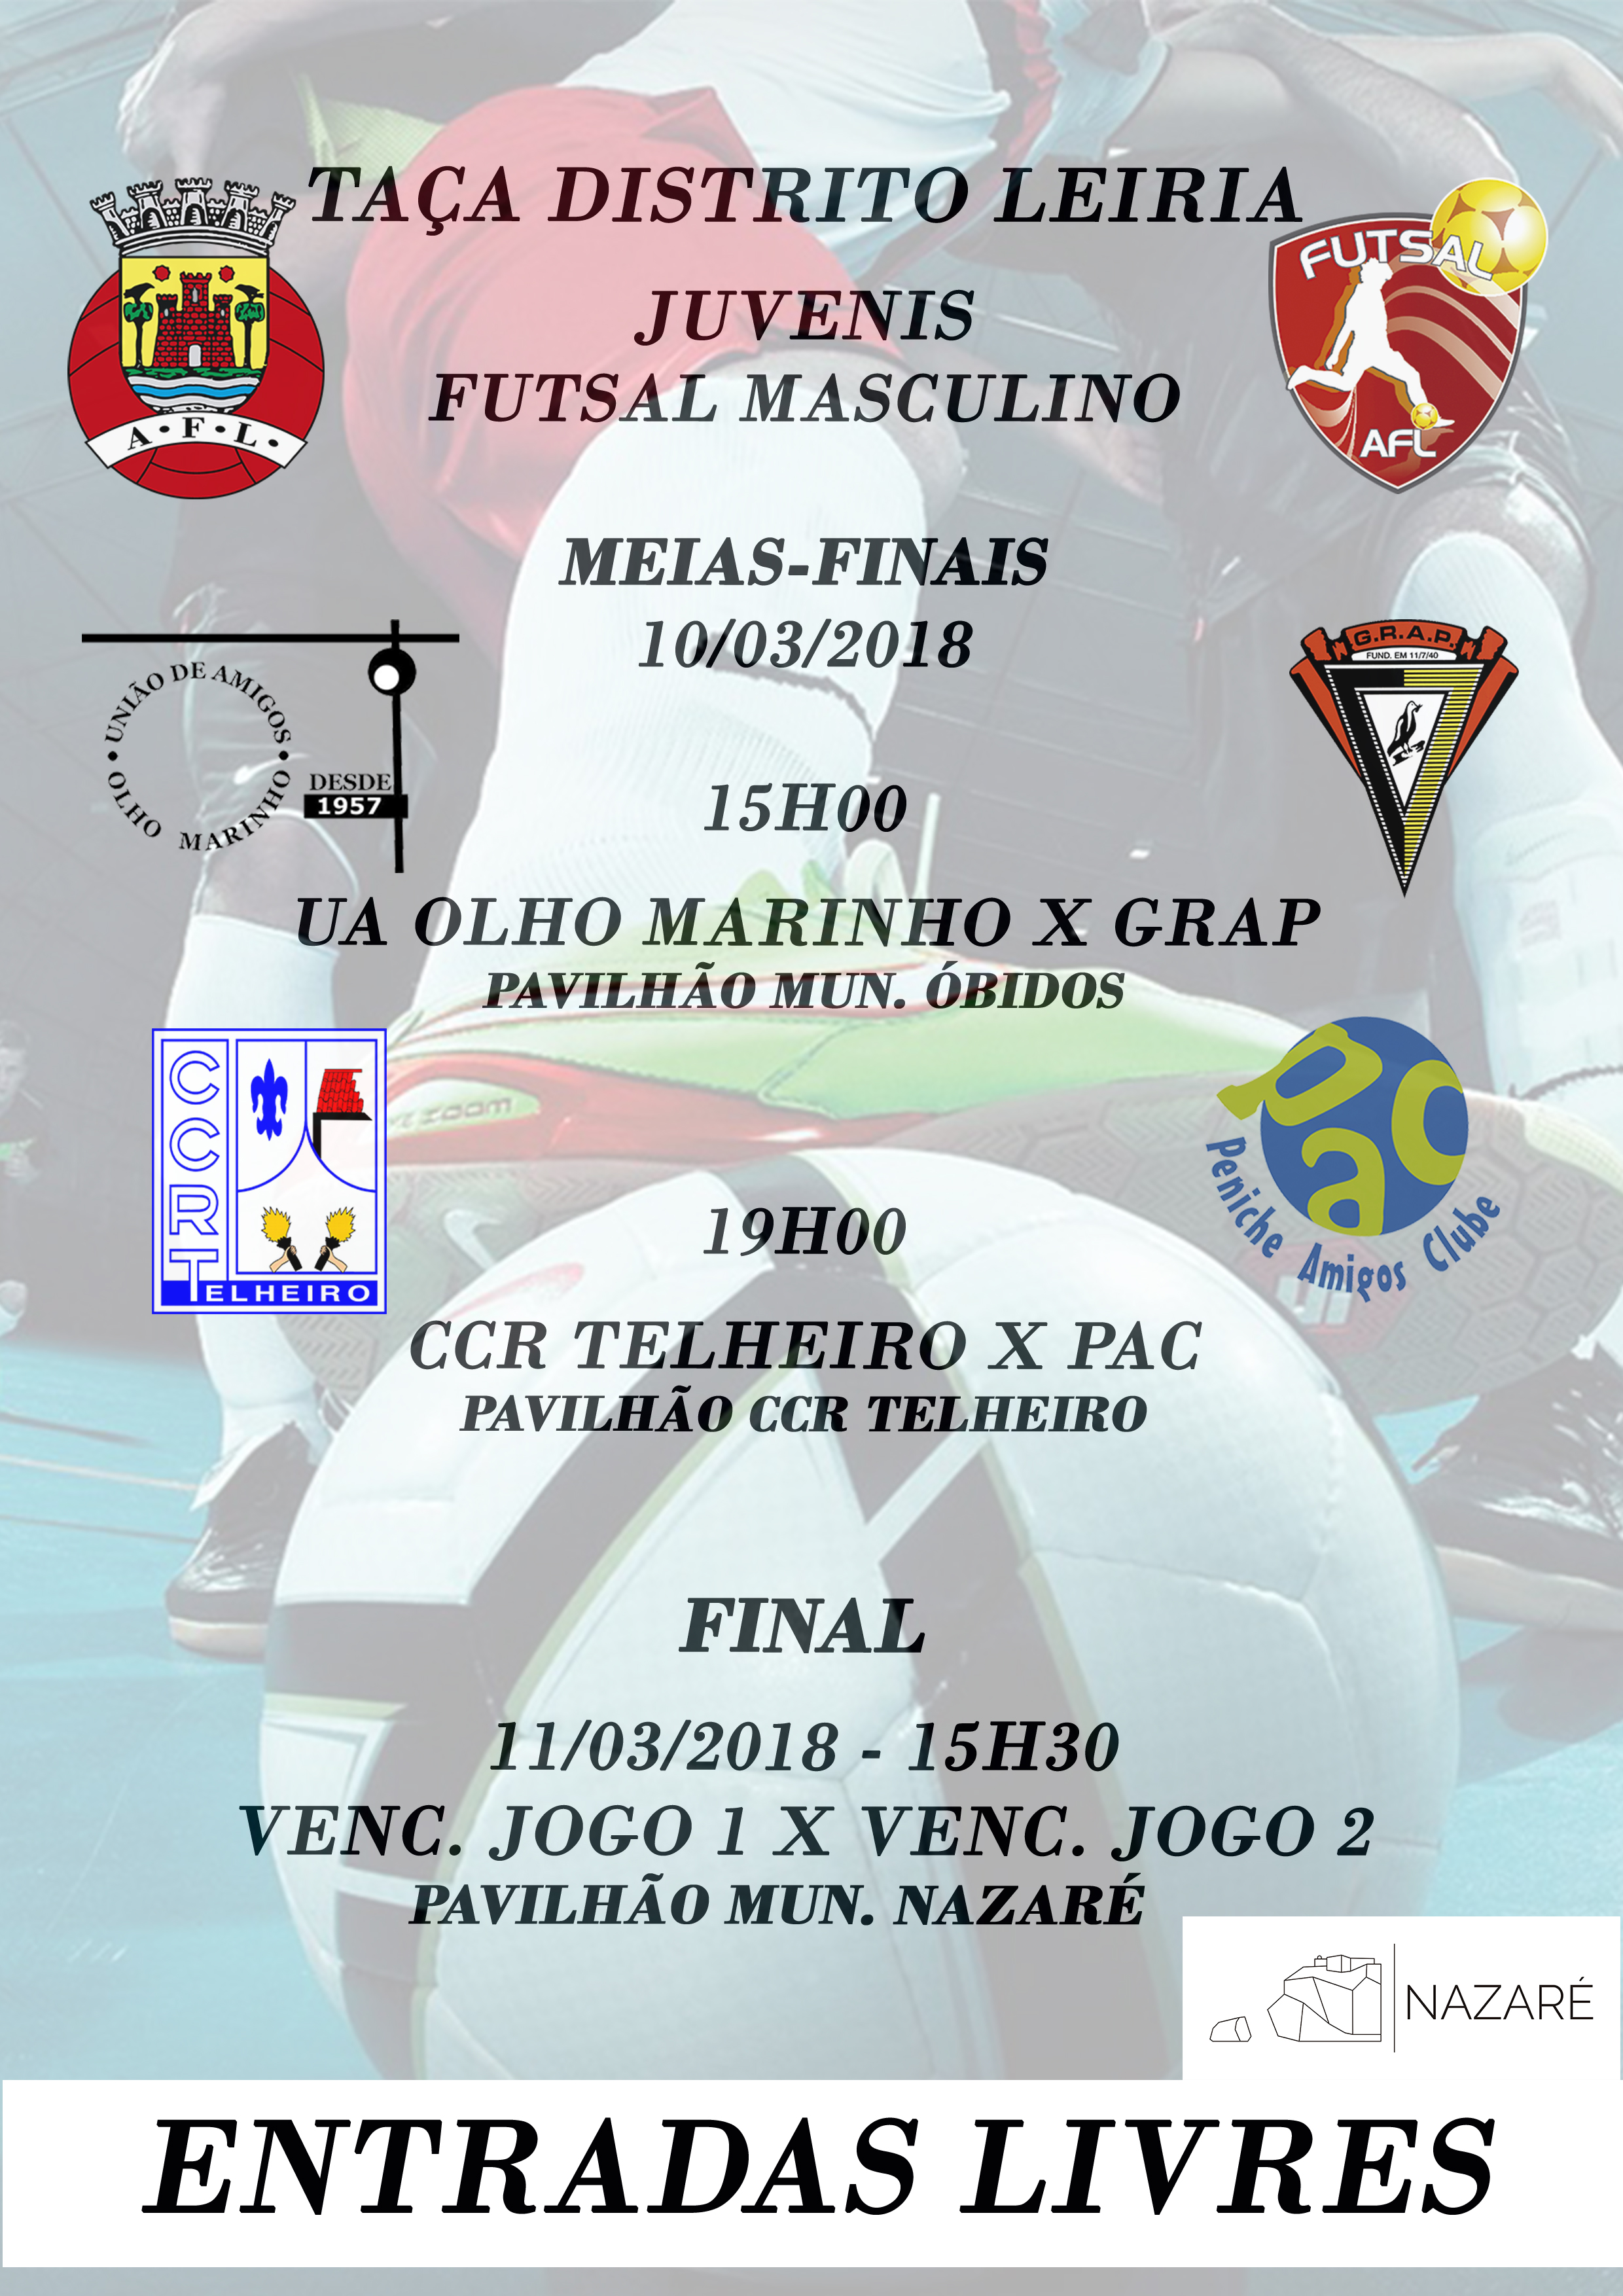 Taça Distrito de Leiria de Juvenis - Futsal